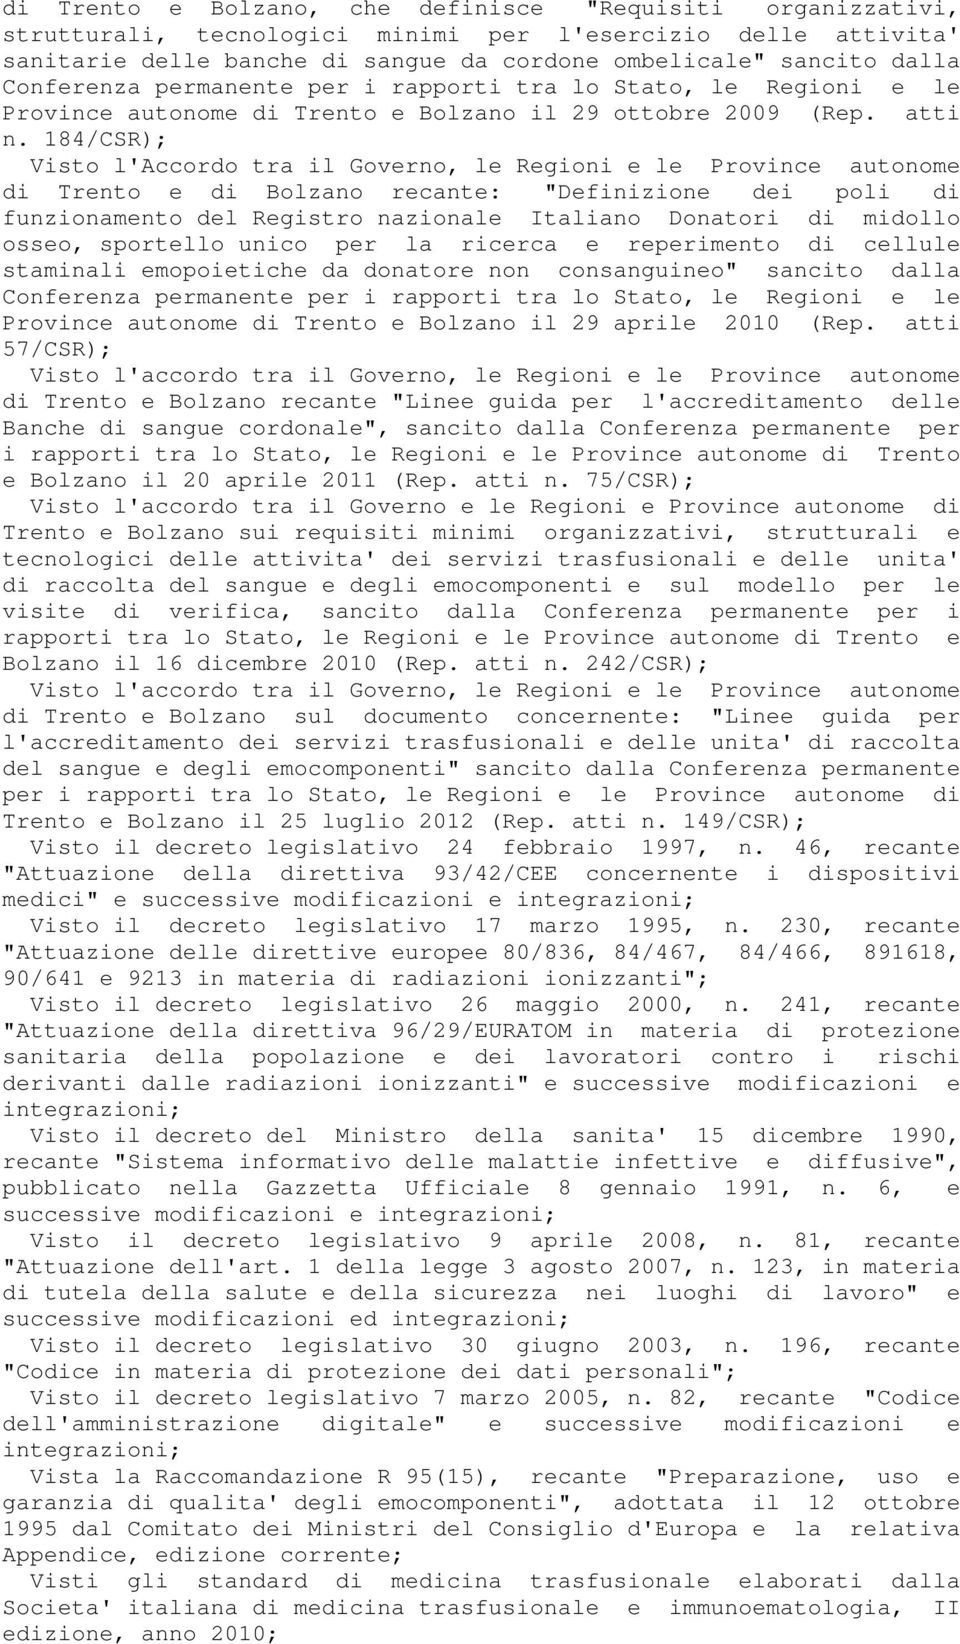 184/CSR); Visto l'accordo tra il Governo, le Regioni e le Province autonome di Trento e di Bolzano recante: "Definizione dei poli di funzionamento del Registro nazionale Italiano Donatori di midollo